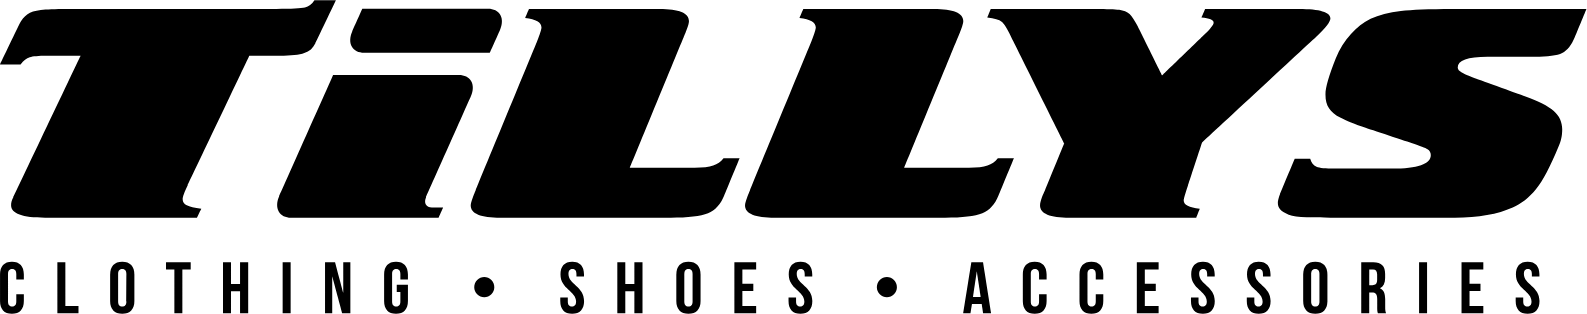 Tillys
 logo large (transparent PNG)